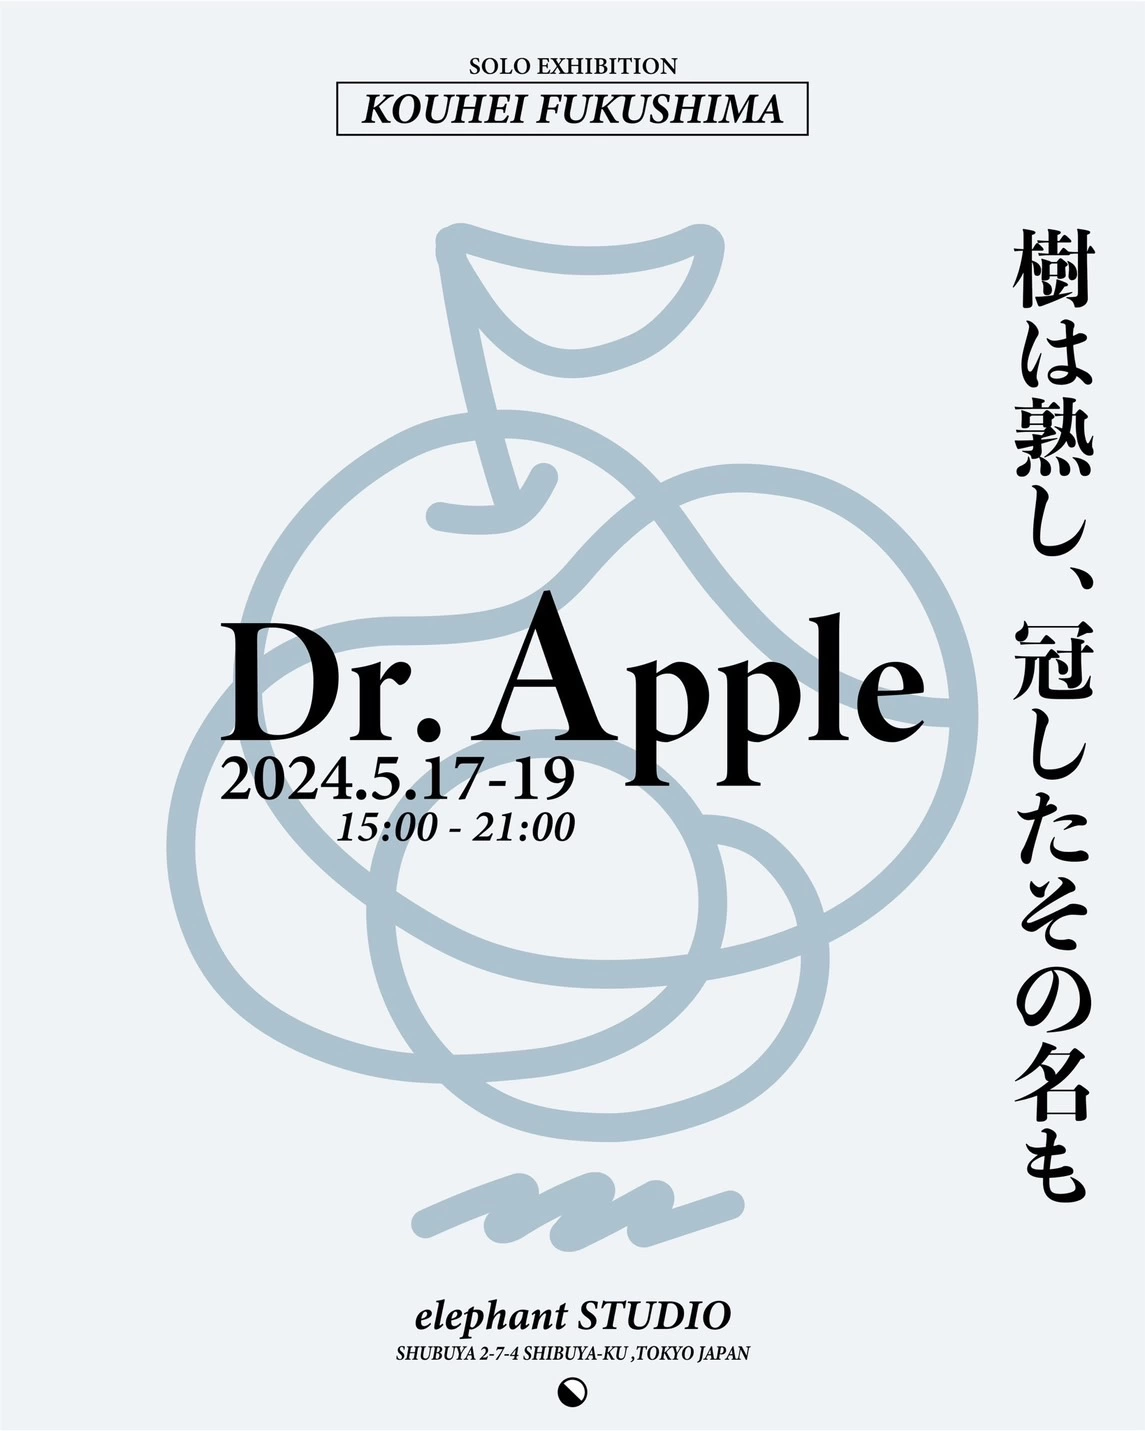 福島滉平 個展 "Dr. Apple"